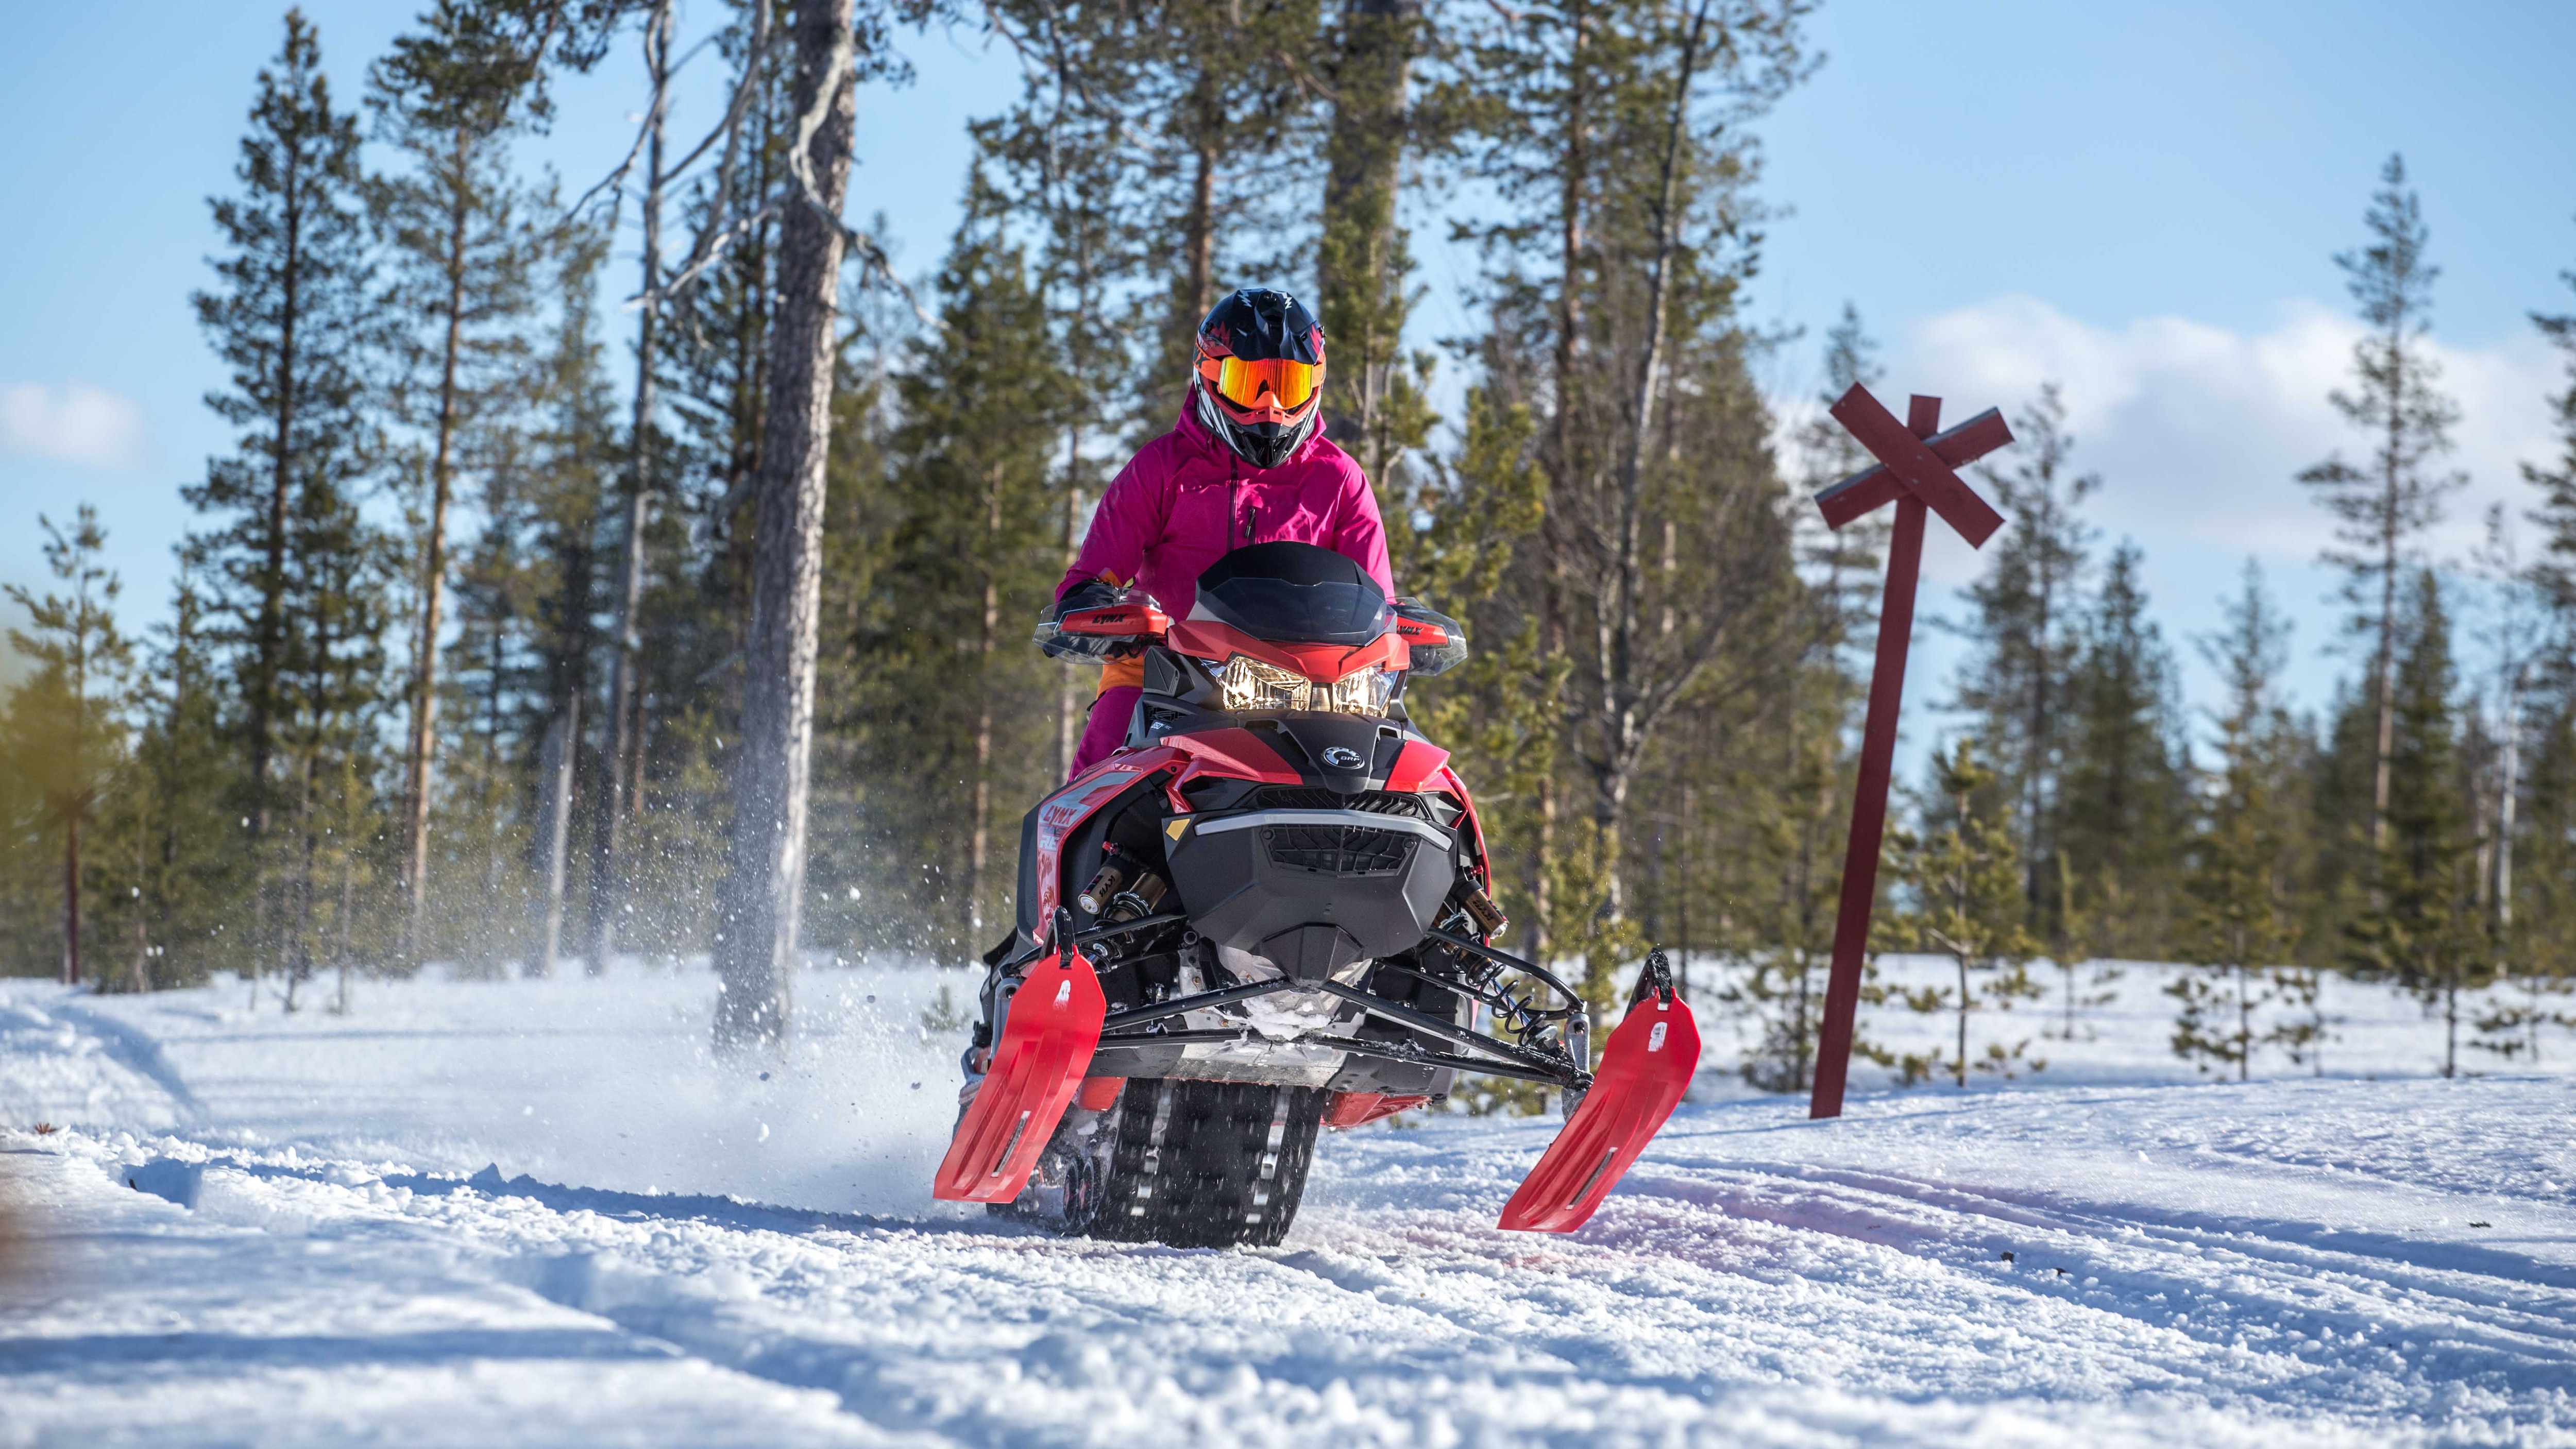 Formelförare Emma Kimiläinen kör snöskoter i norra Finland